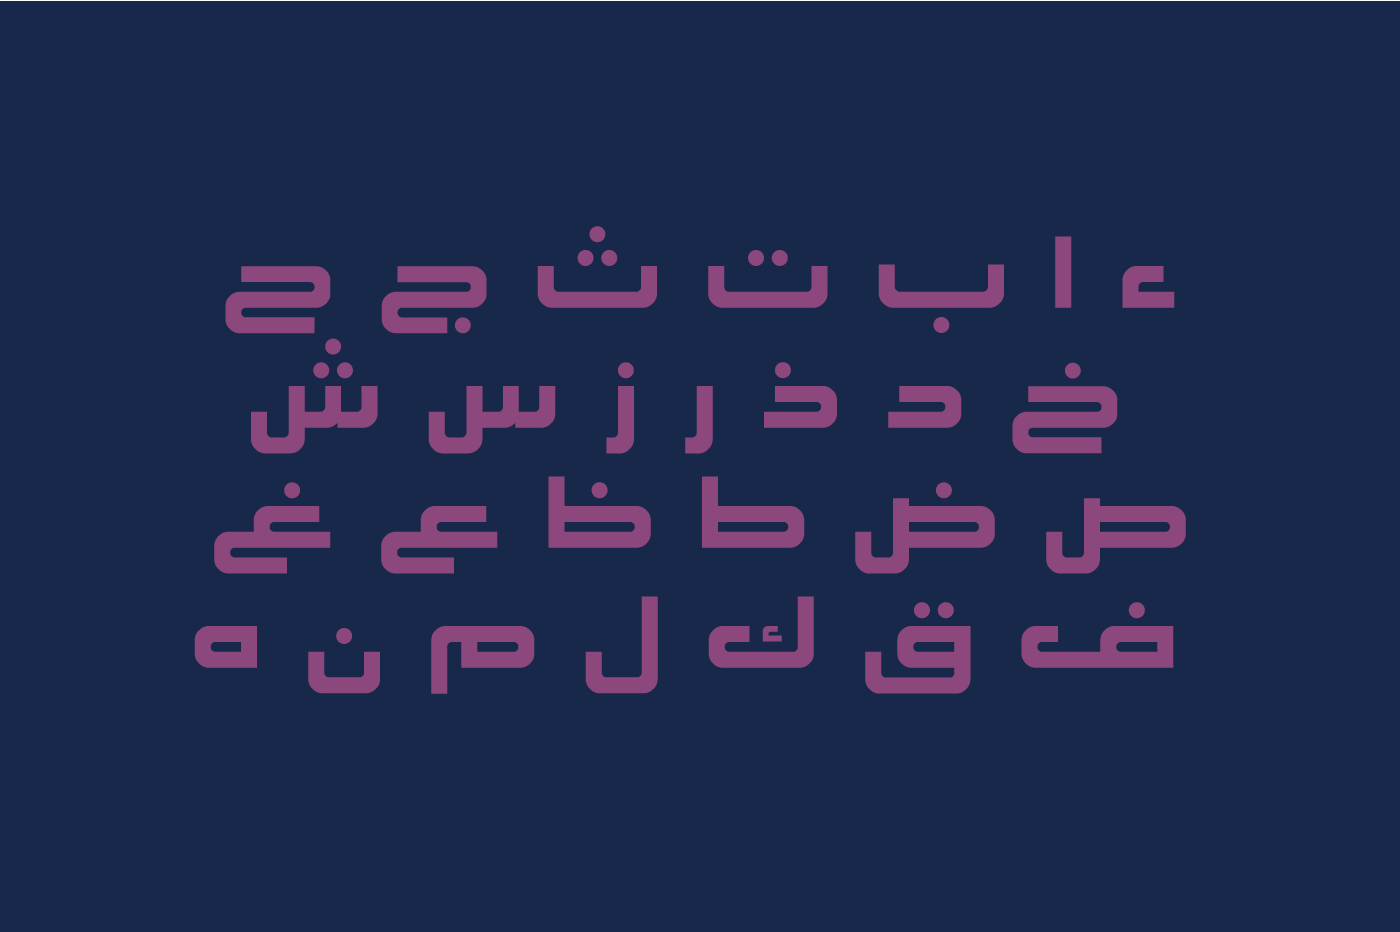 خط عربي فنت عربي تايب تصميم شعارات ليبيا مجاني